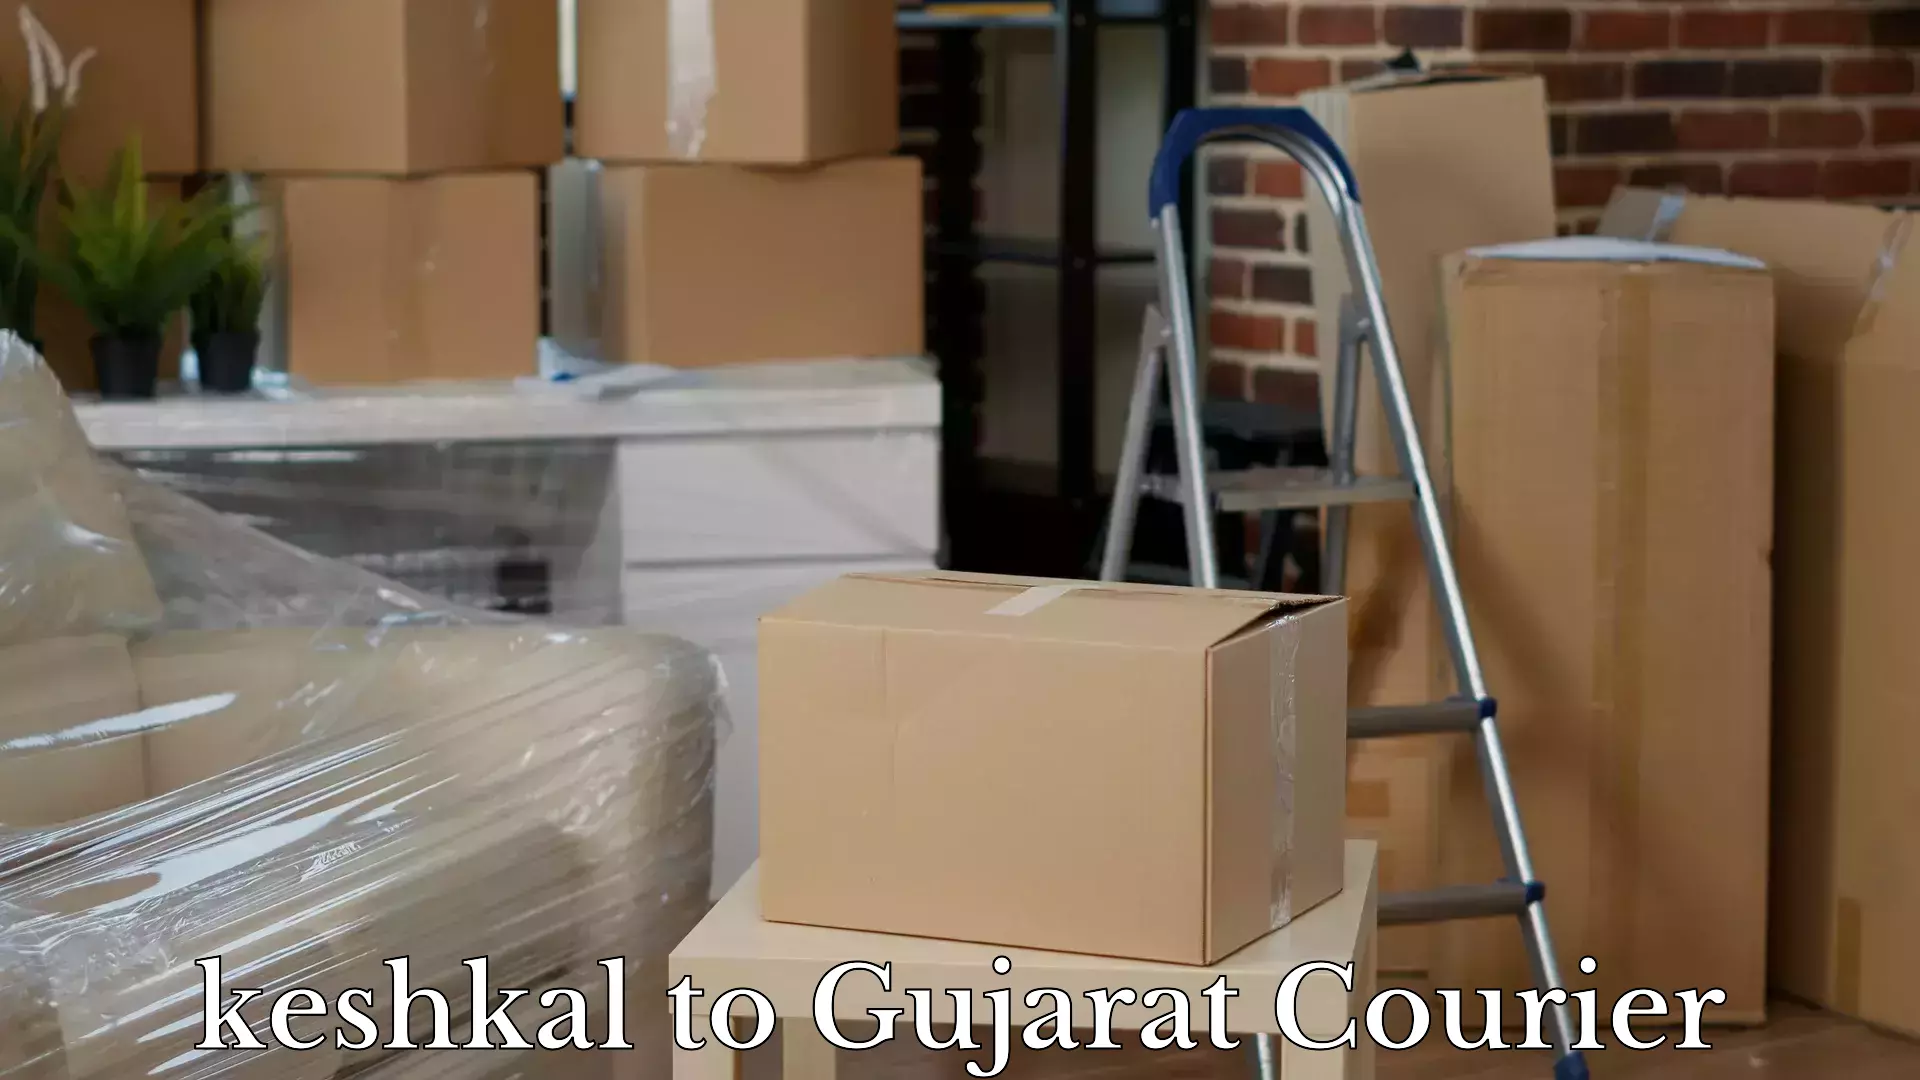 Luggage shipment processing keshkal to Narmada Gujarat